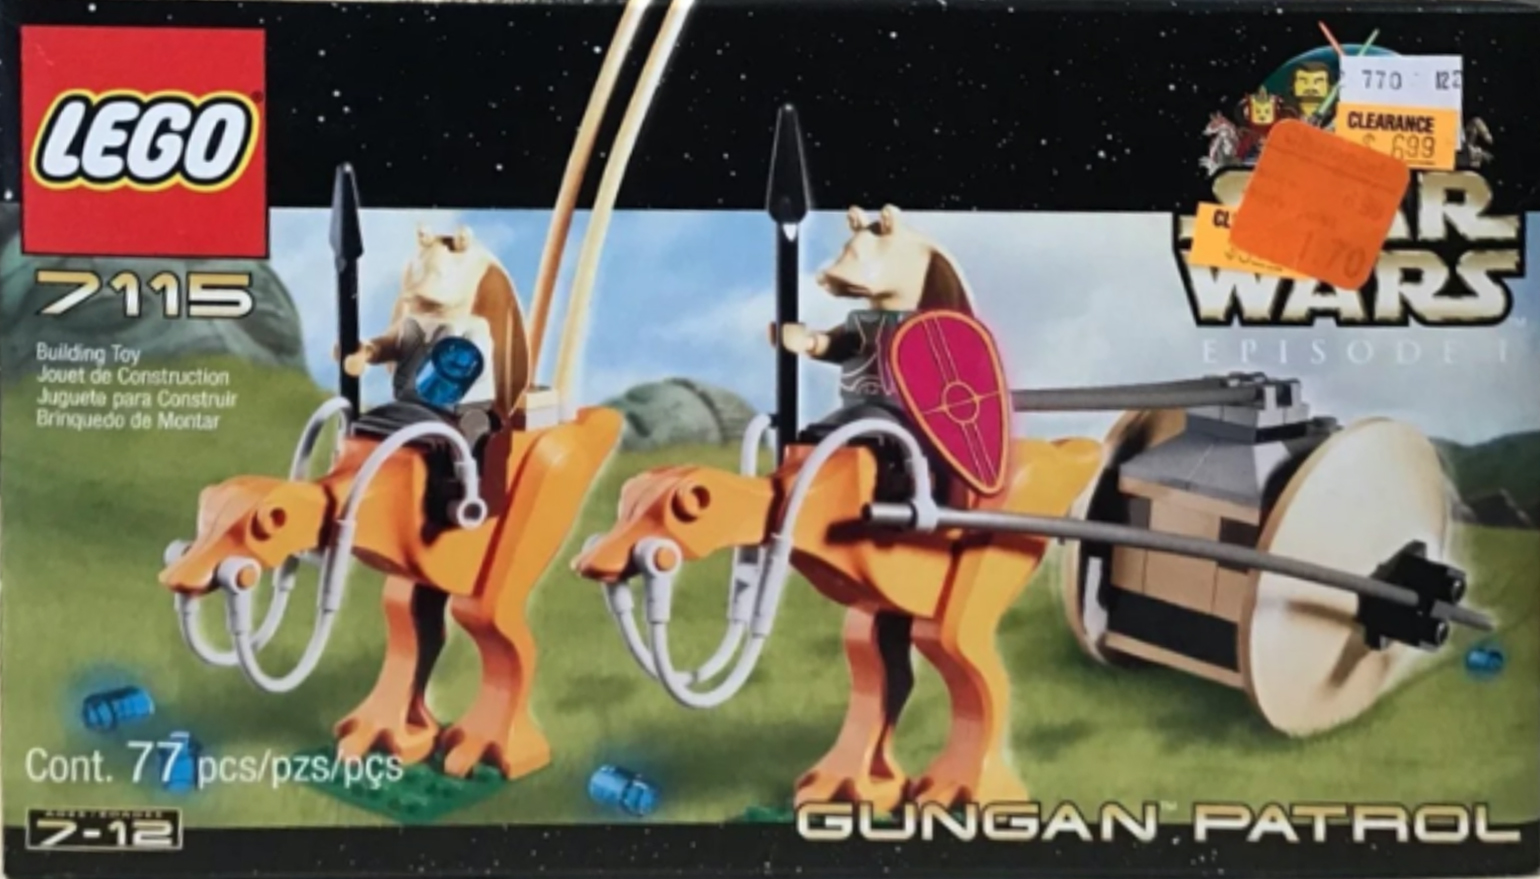 7115: Gungan Patrol